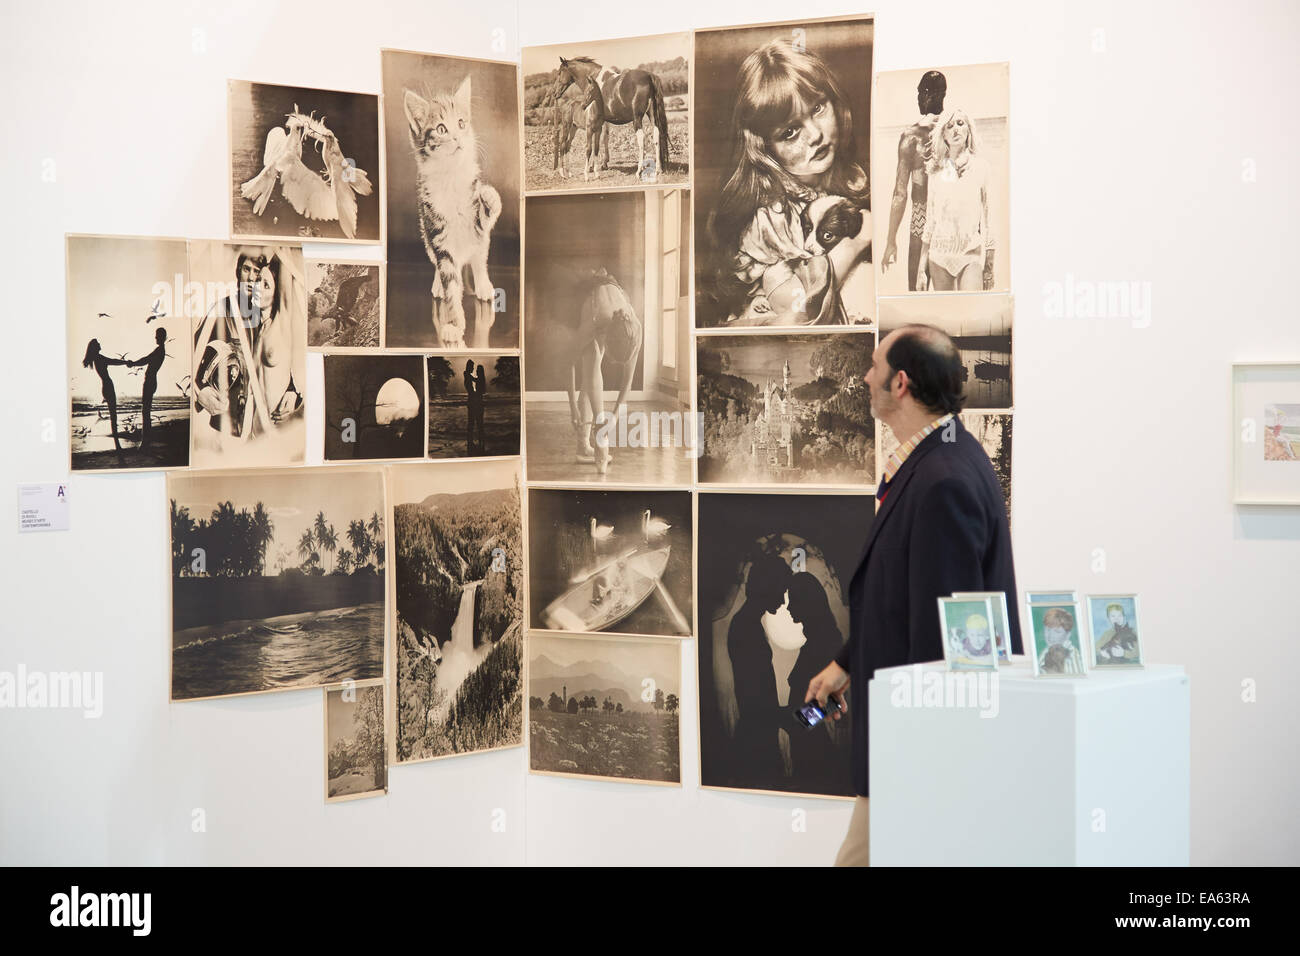 Turin, Italie. Nov 6, 2014. Artissima 2014, personnes et collectionneurs d'art contemporain à ernissage à Turin, Italie. Crédit : A. Astes/Alamy Live News Banque D'Images